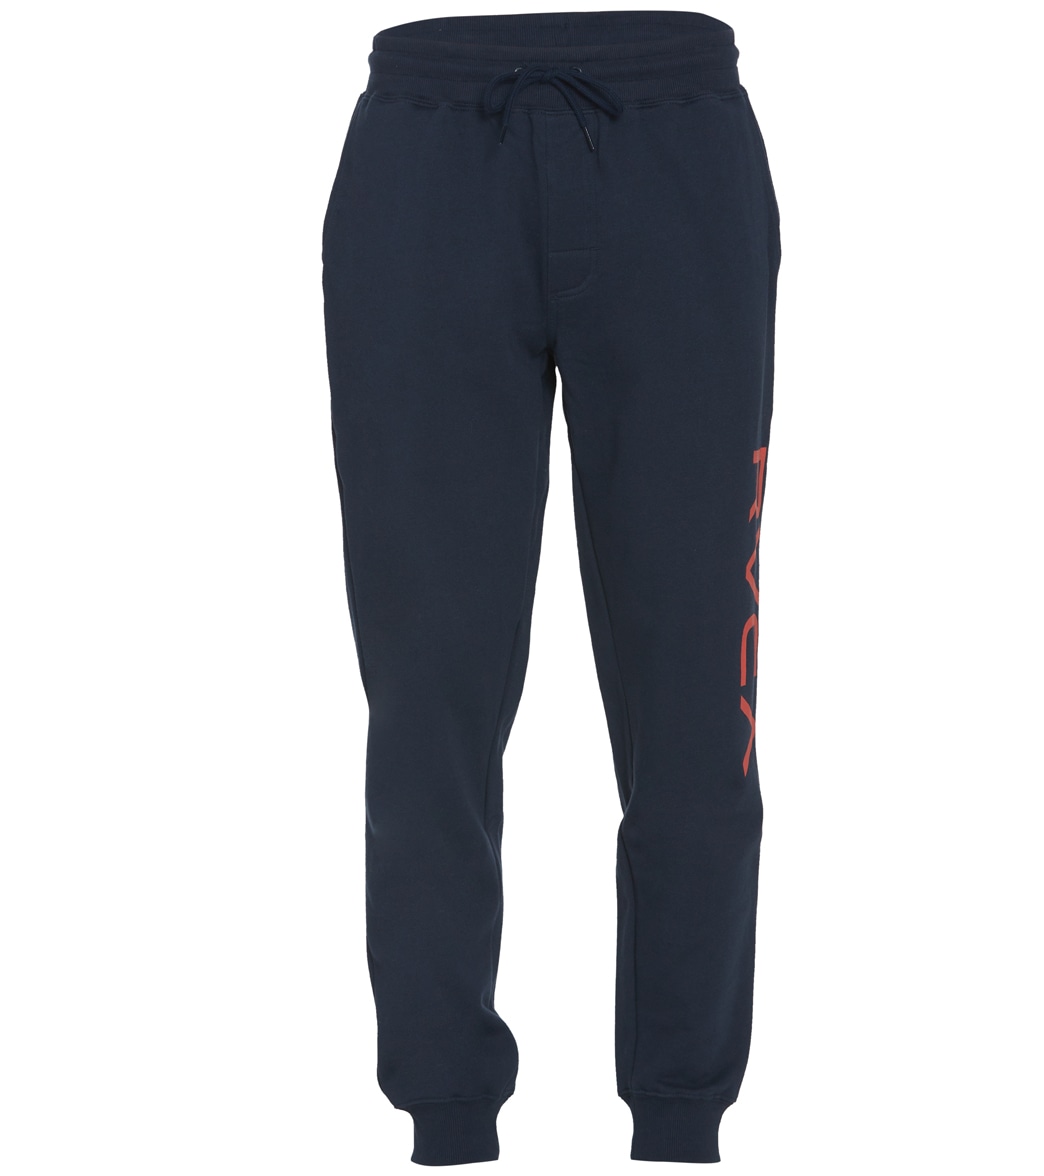 Rvca Men's Big Sweatpants - Navy Large Cotton/Polyester - Swimoutlet.com